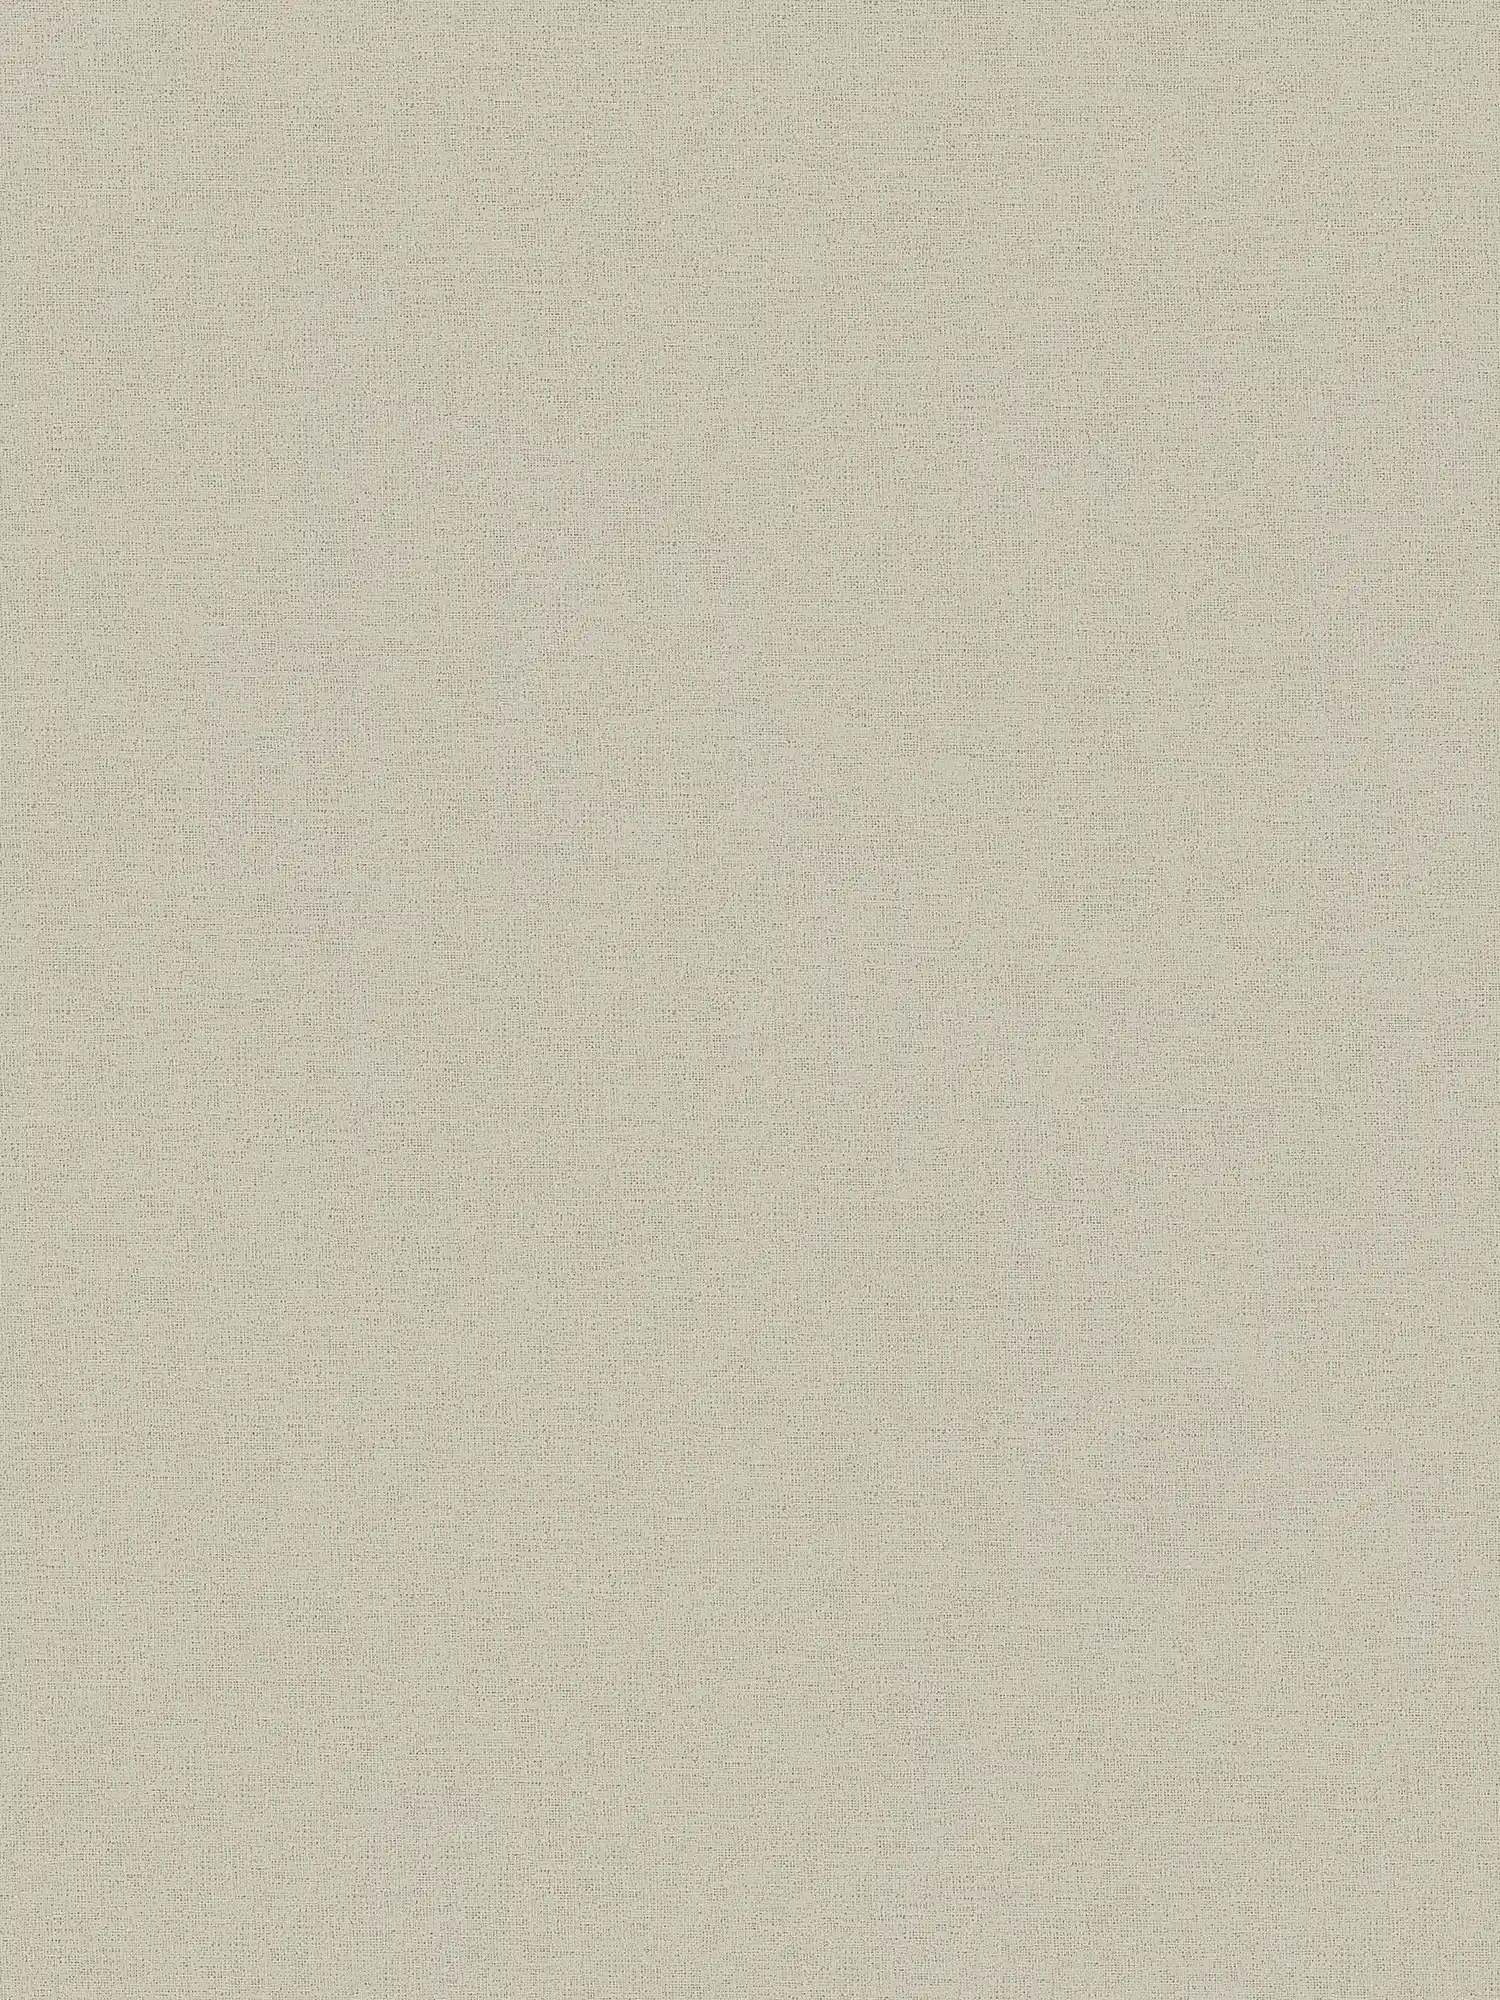 Papel pintado de aspecto de lino beige con estructura textil moteada
